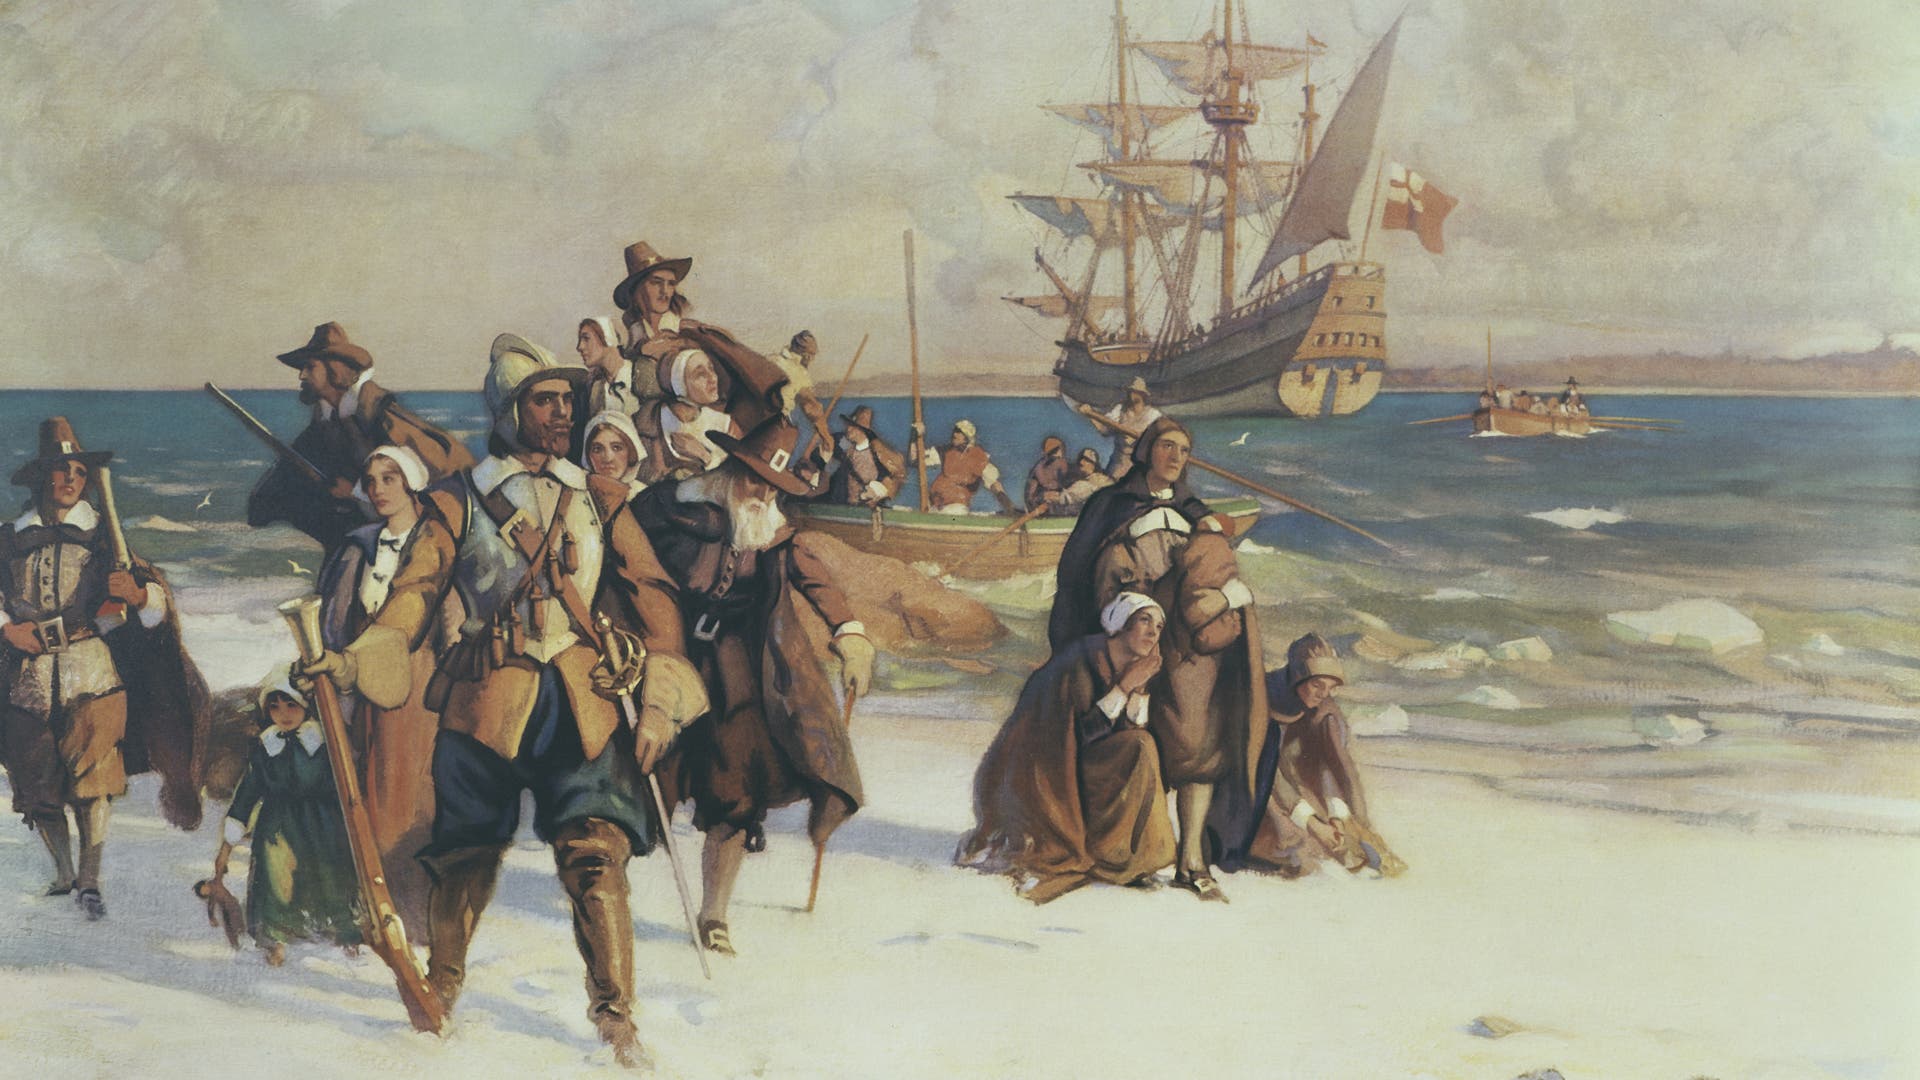 HISTORY: Plymouth Colony